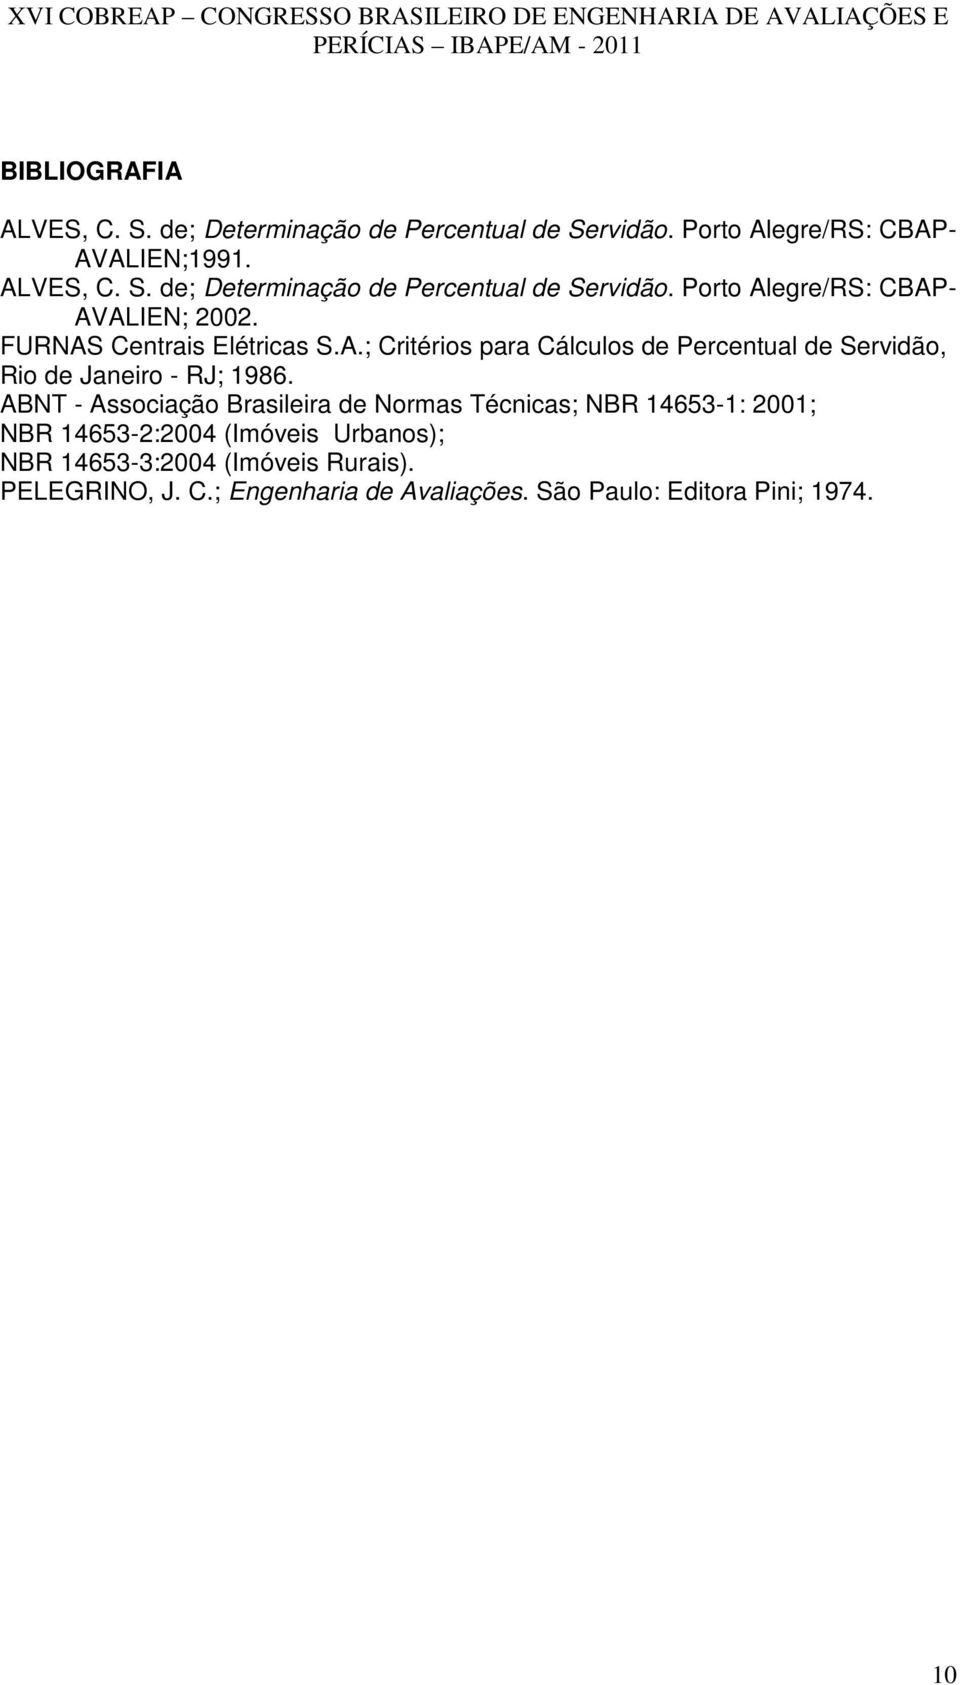 ABNT - Associação Brasileira de Normas Técnicas; NBR 14653-1: 2001; NBR 14653-2:2004 (Imóveis Urbanos); NBR 14653-3:2004 (Imóveis